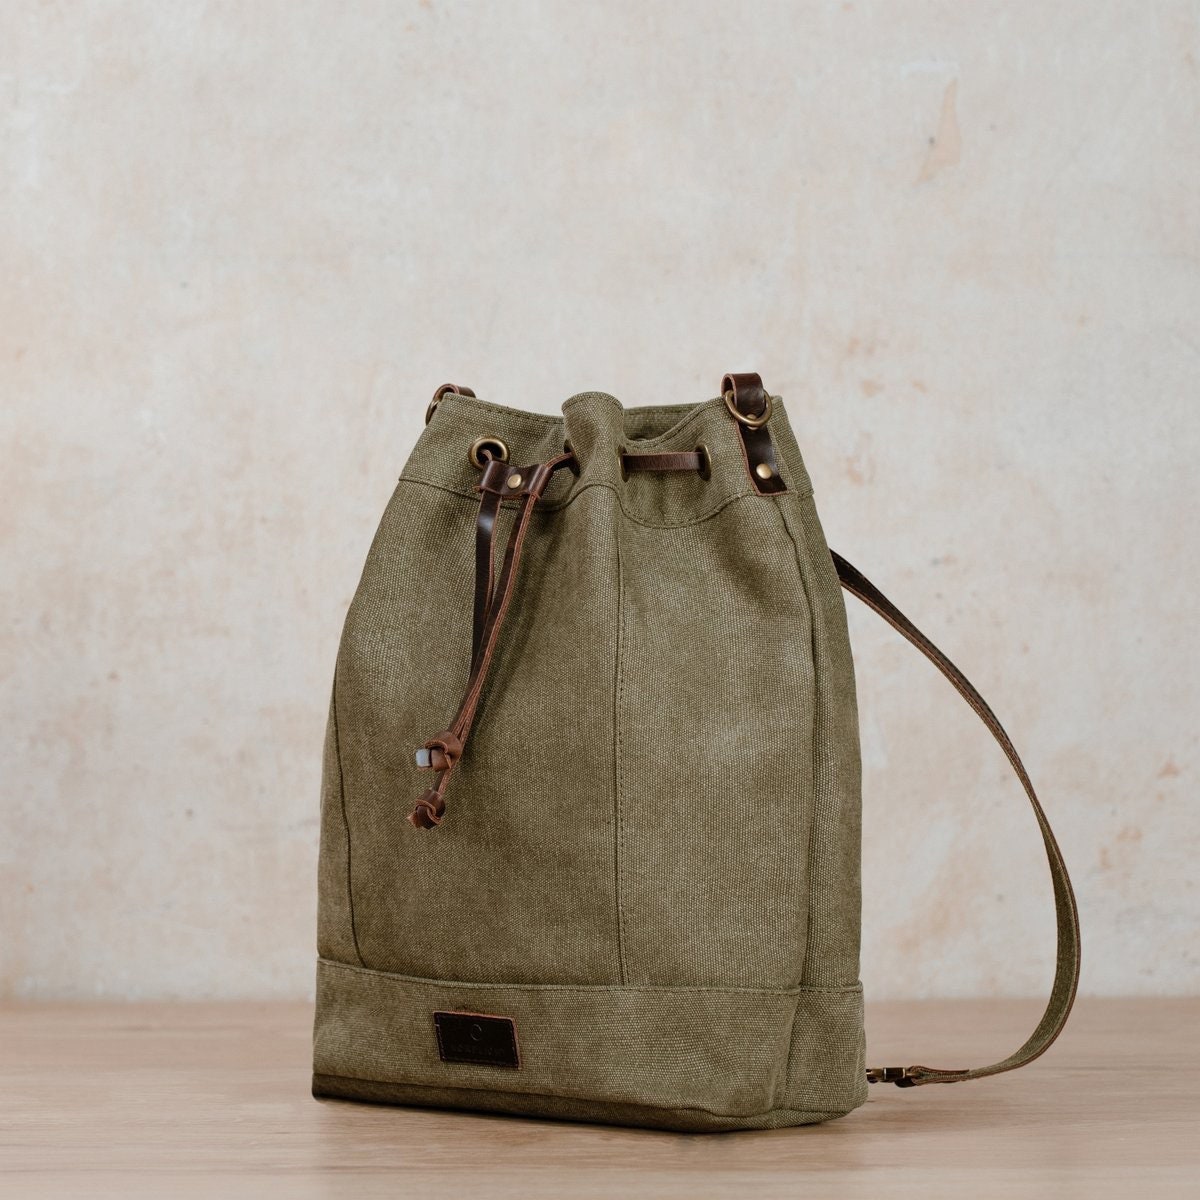 NORDLICHT Beuteltasche JANNA Tasche aus Segeltuch 2 in 1 Rucksack und Umhängetasche grün